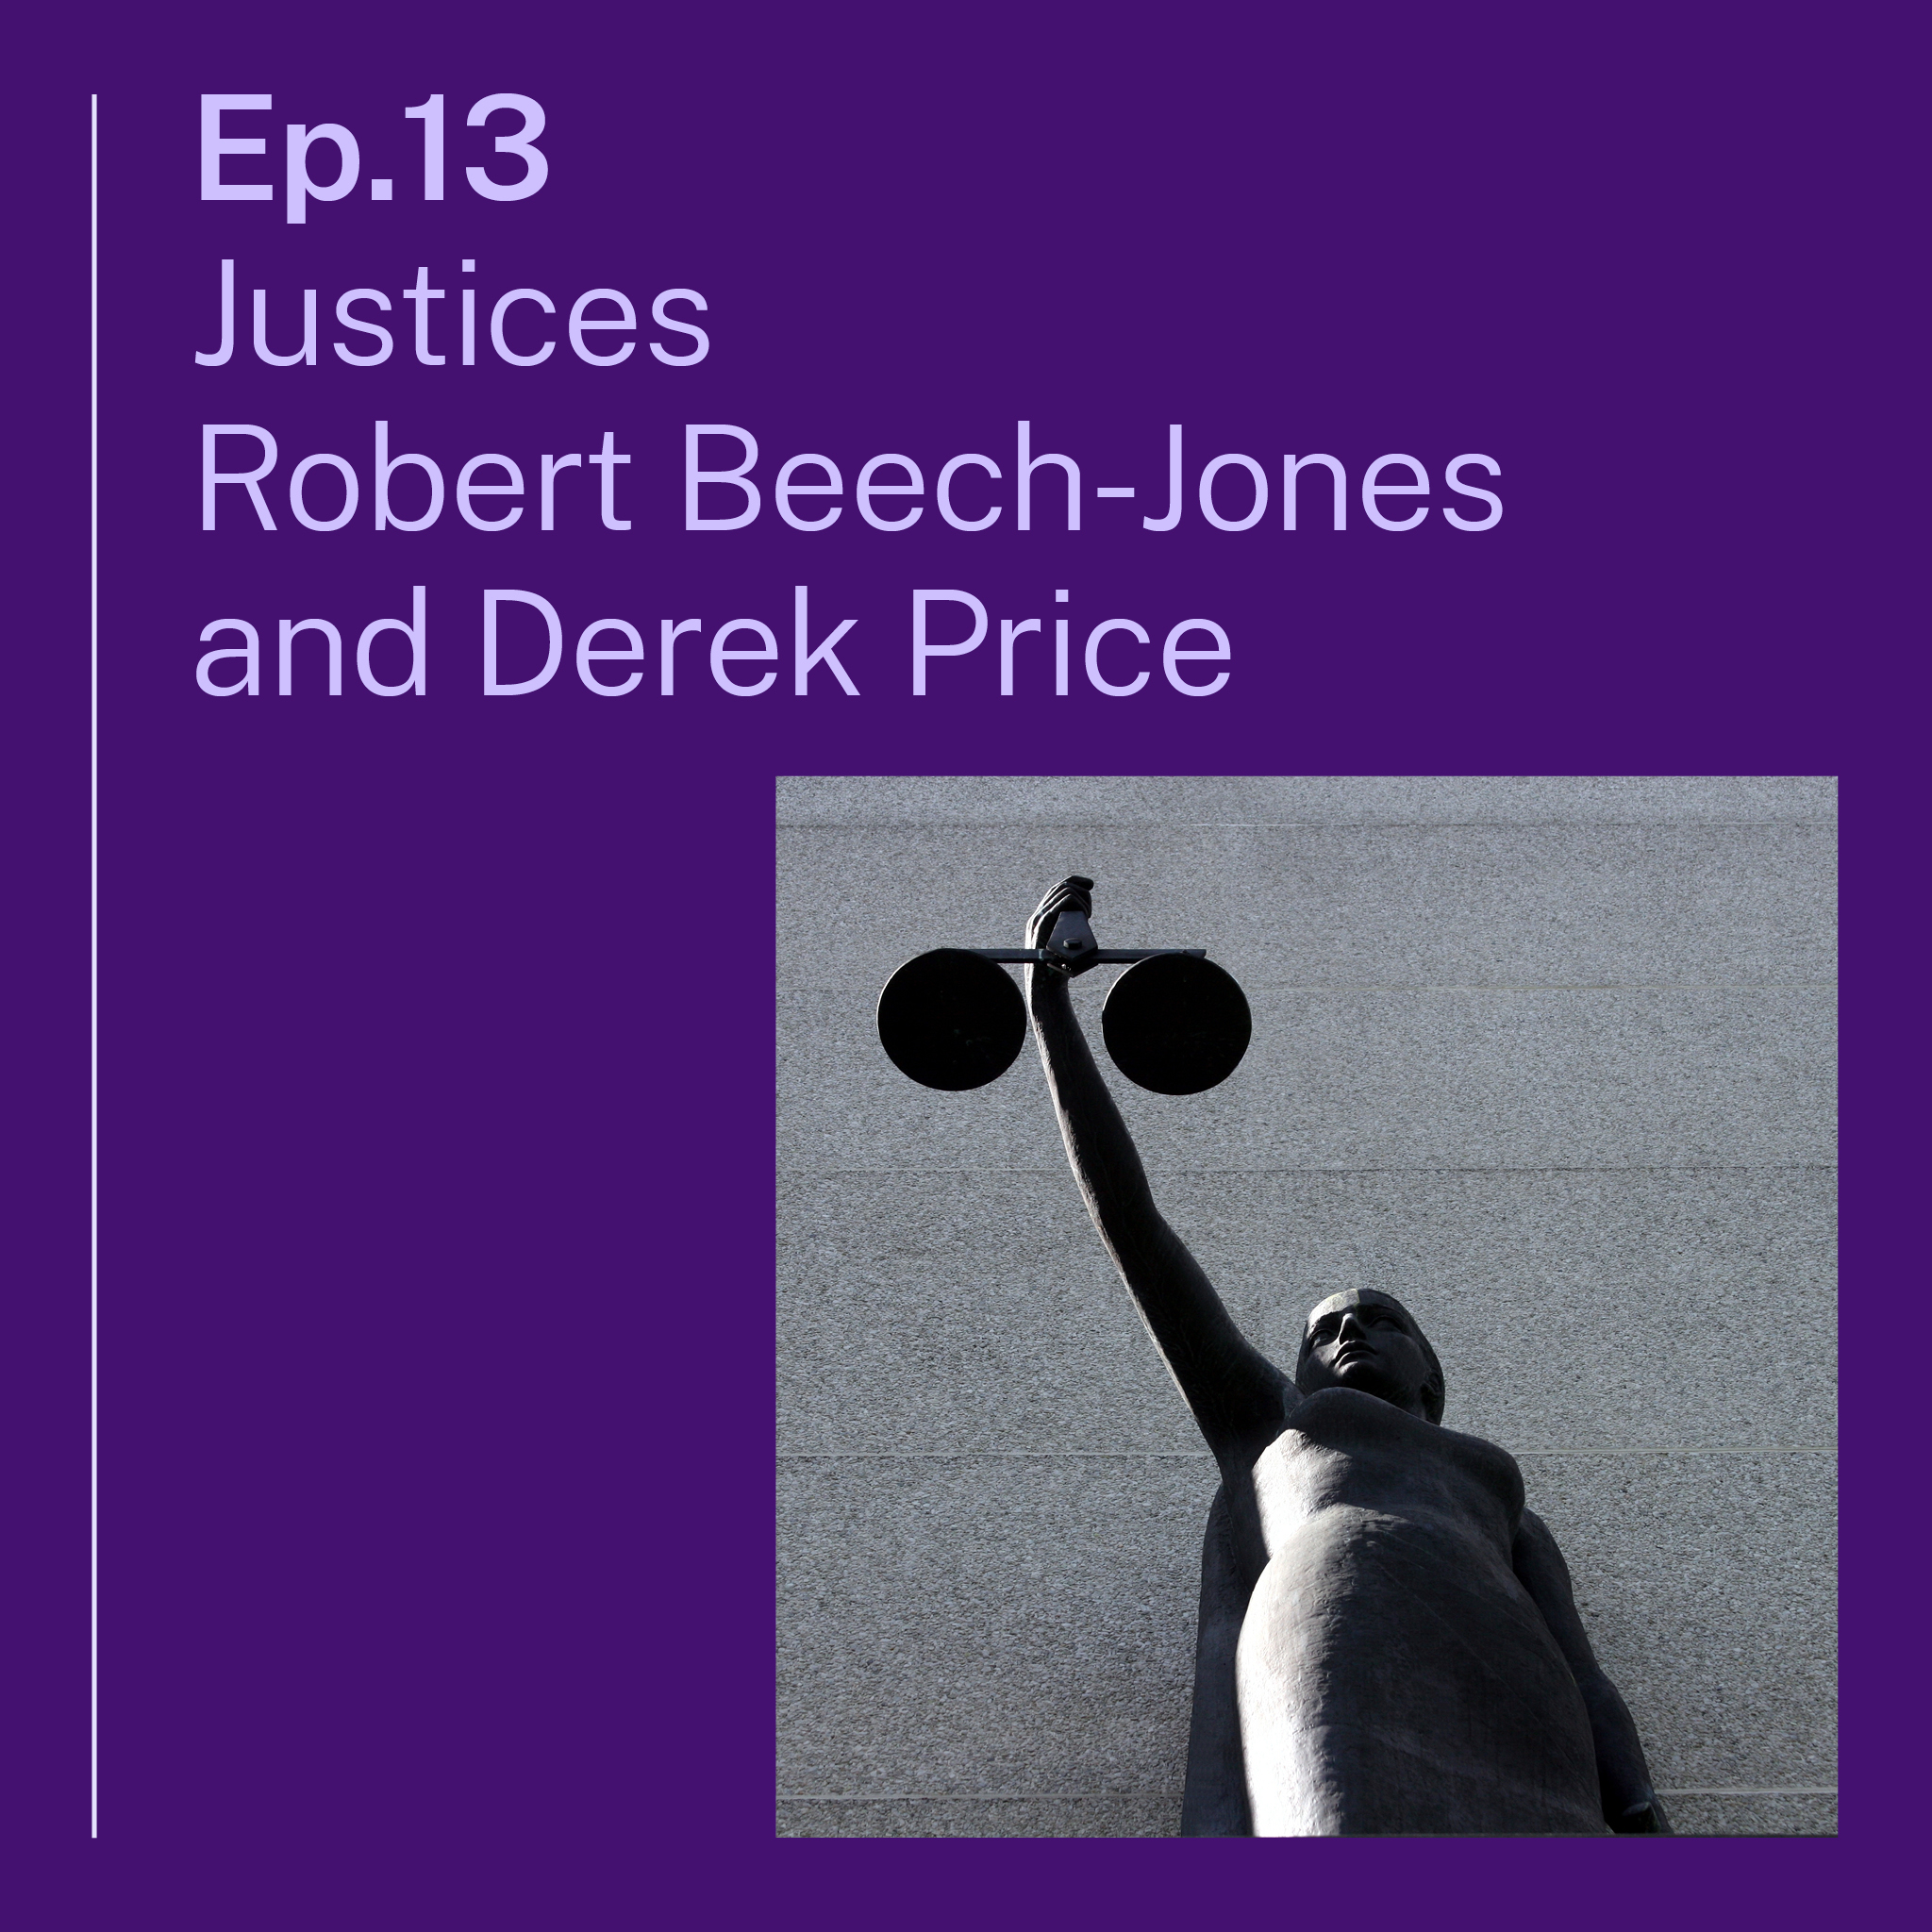 Spotlight on the appeals process with Justices Robert Beech-Jones and Derek Price